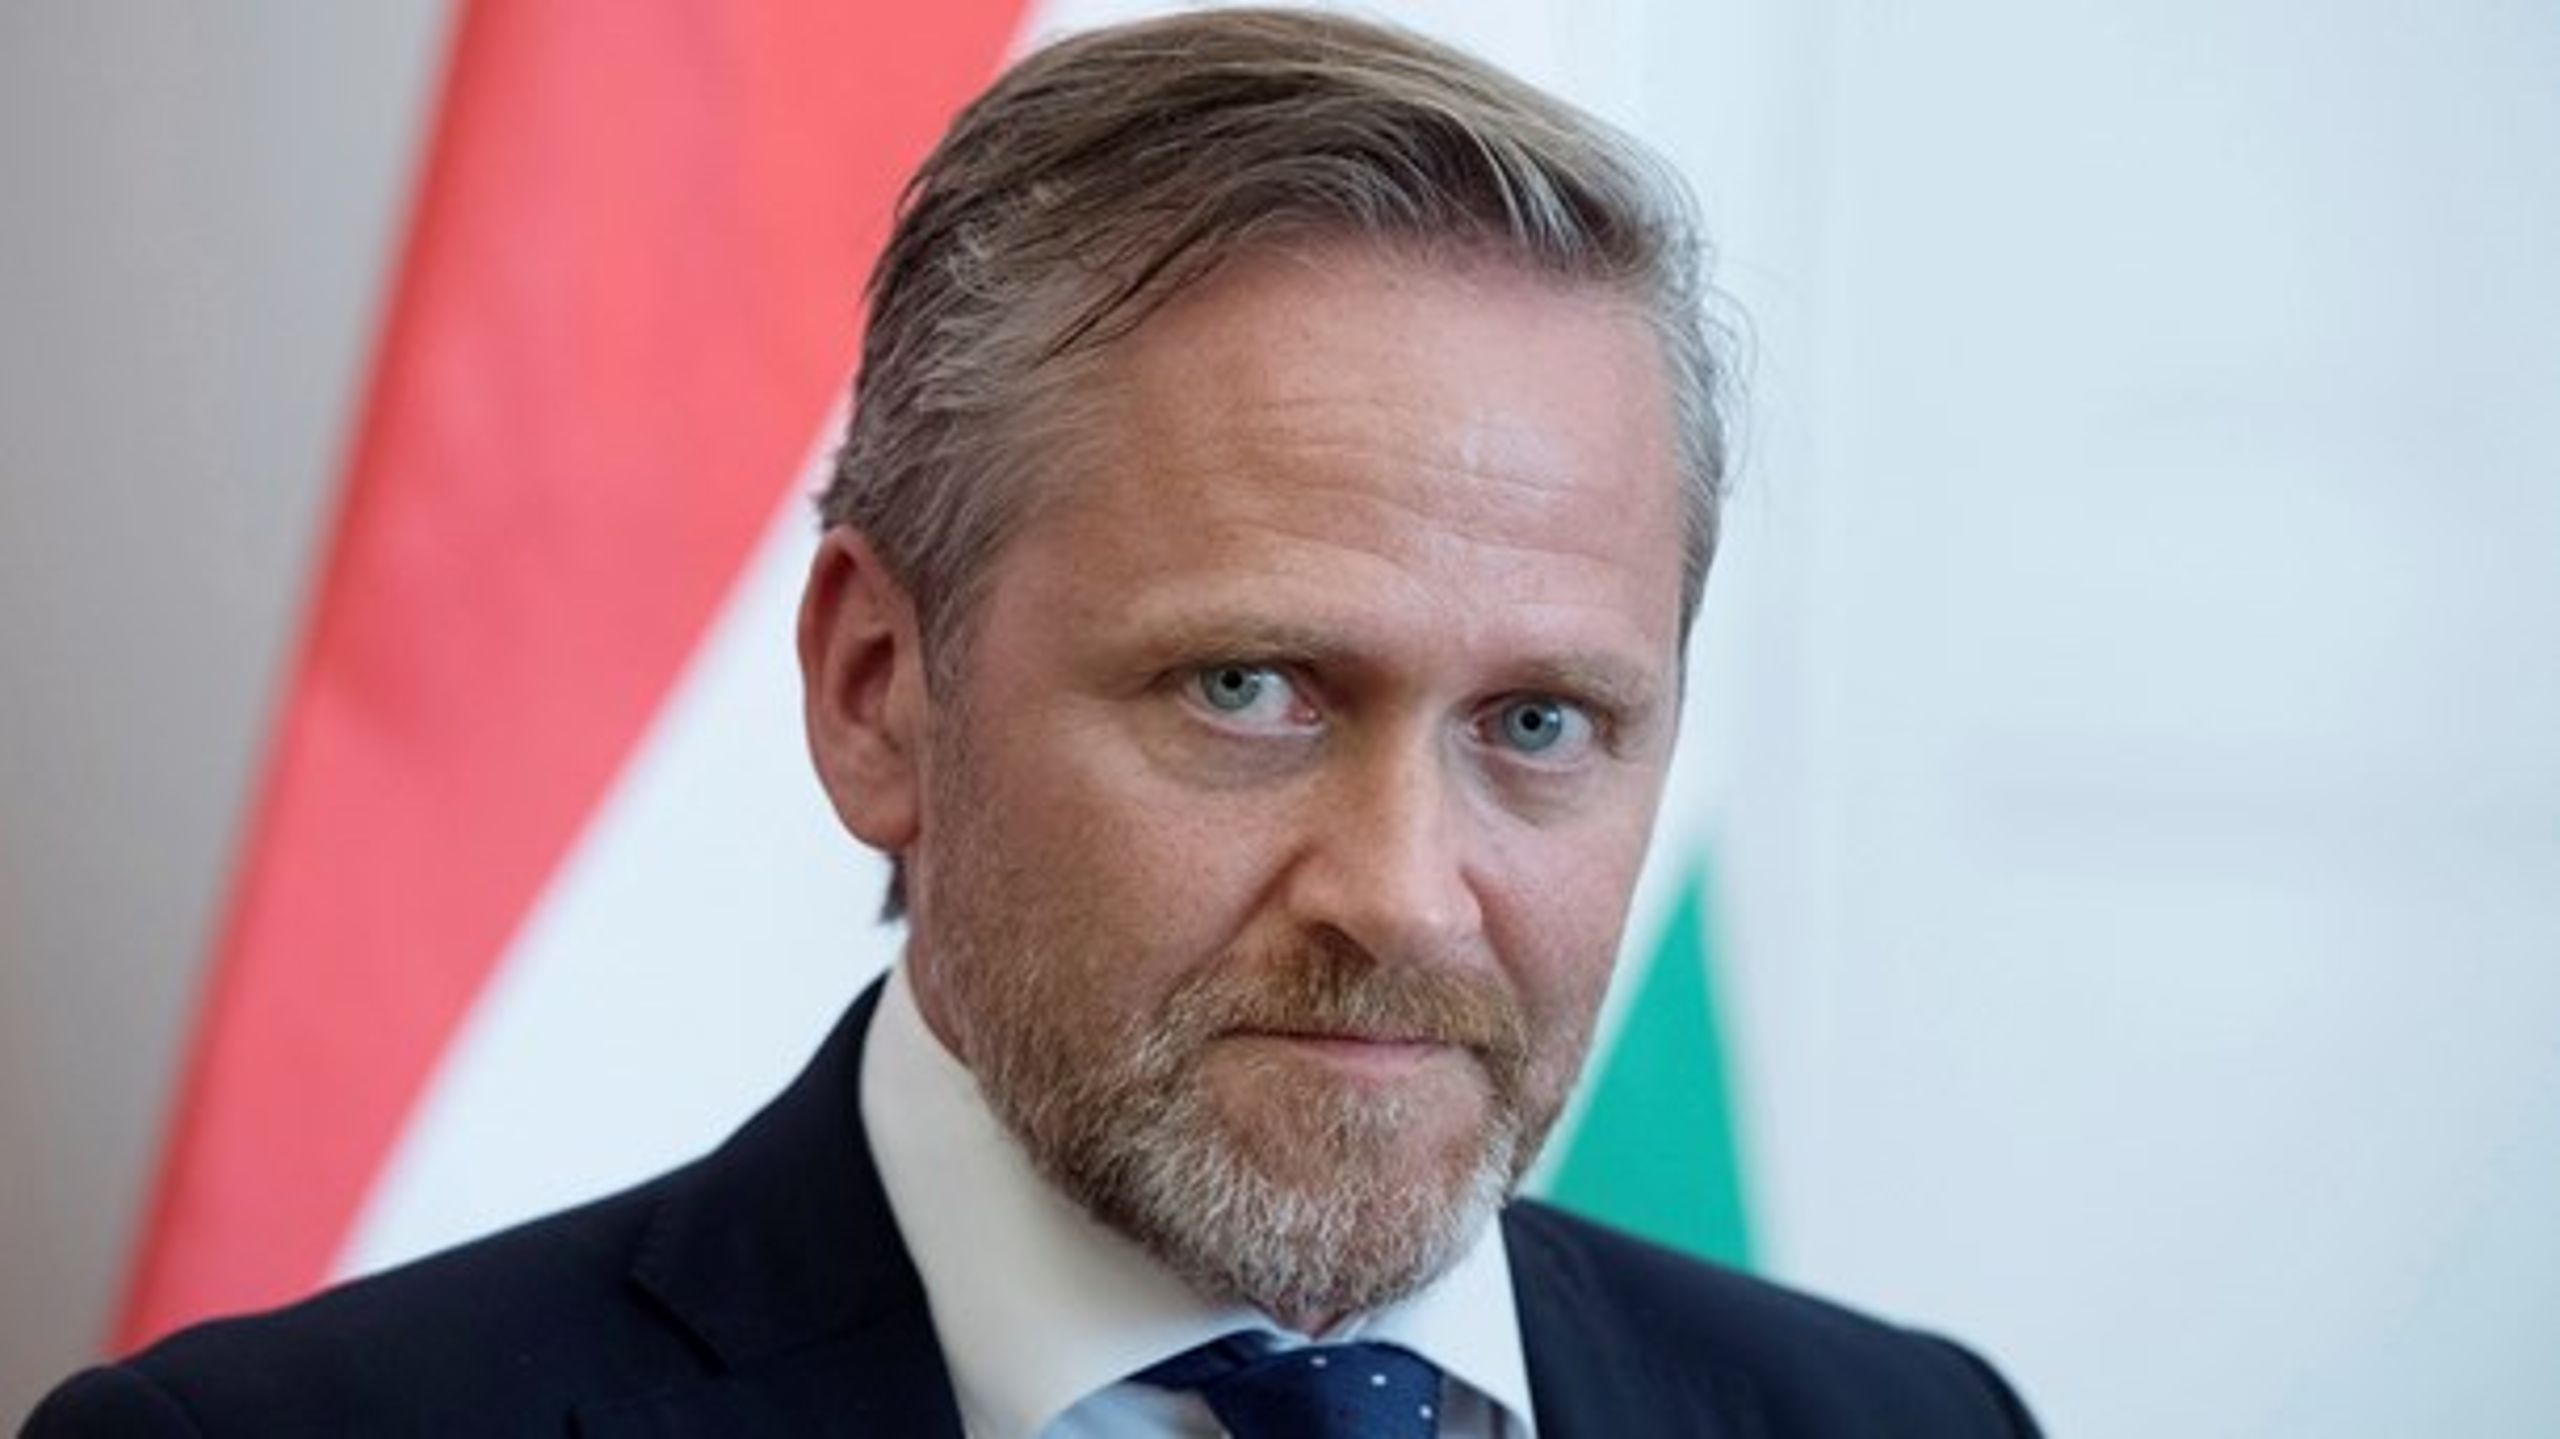 Den danske regering har lukket kassen for 24 ngo'er i Israel og Palæstina. Det møder hård kritik.